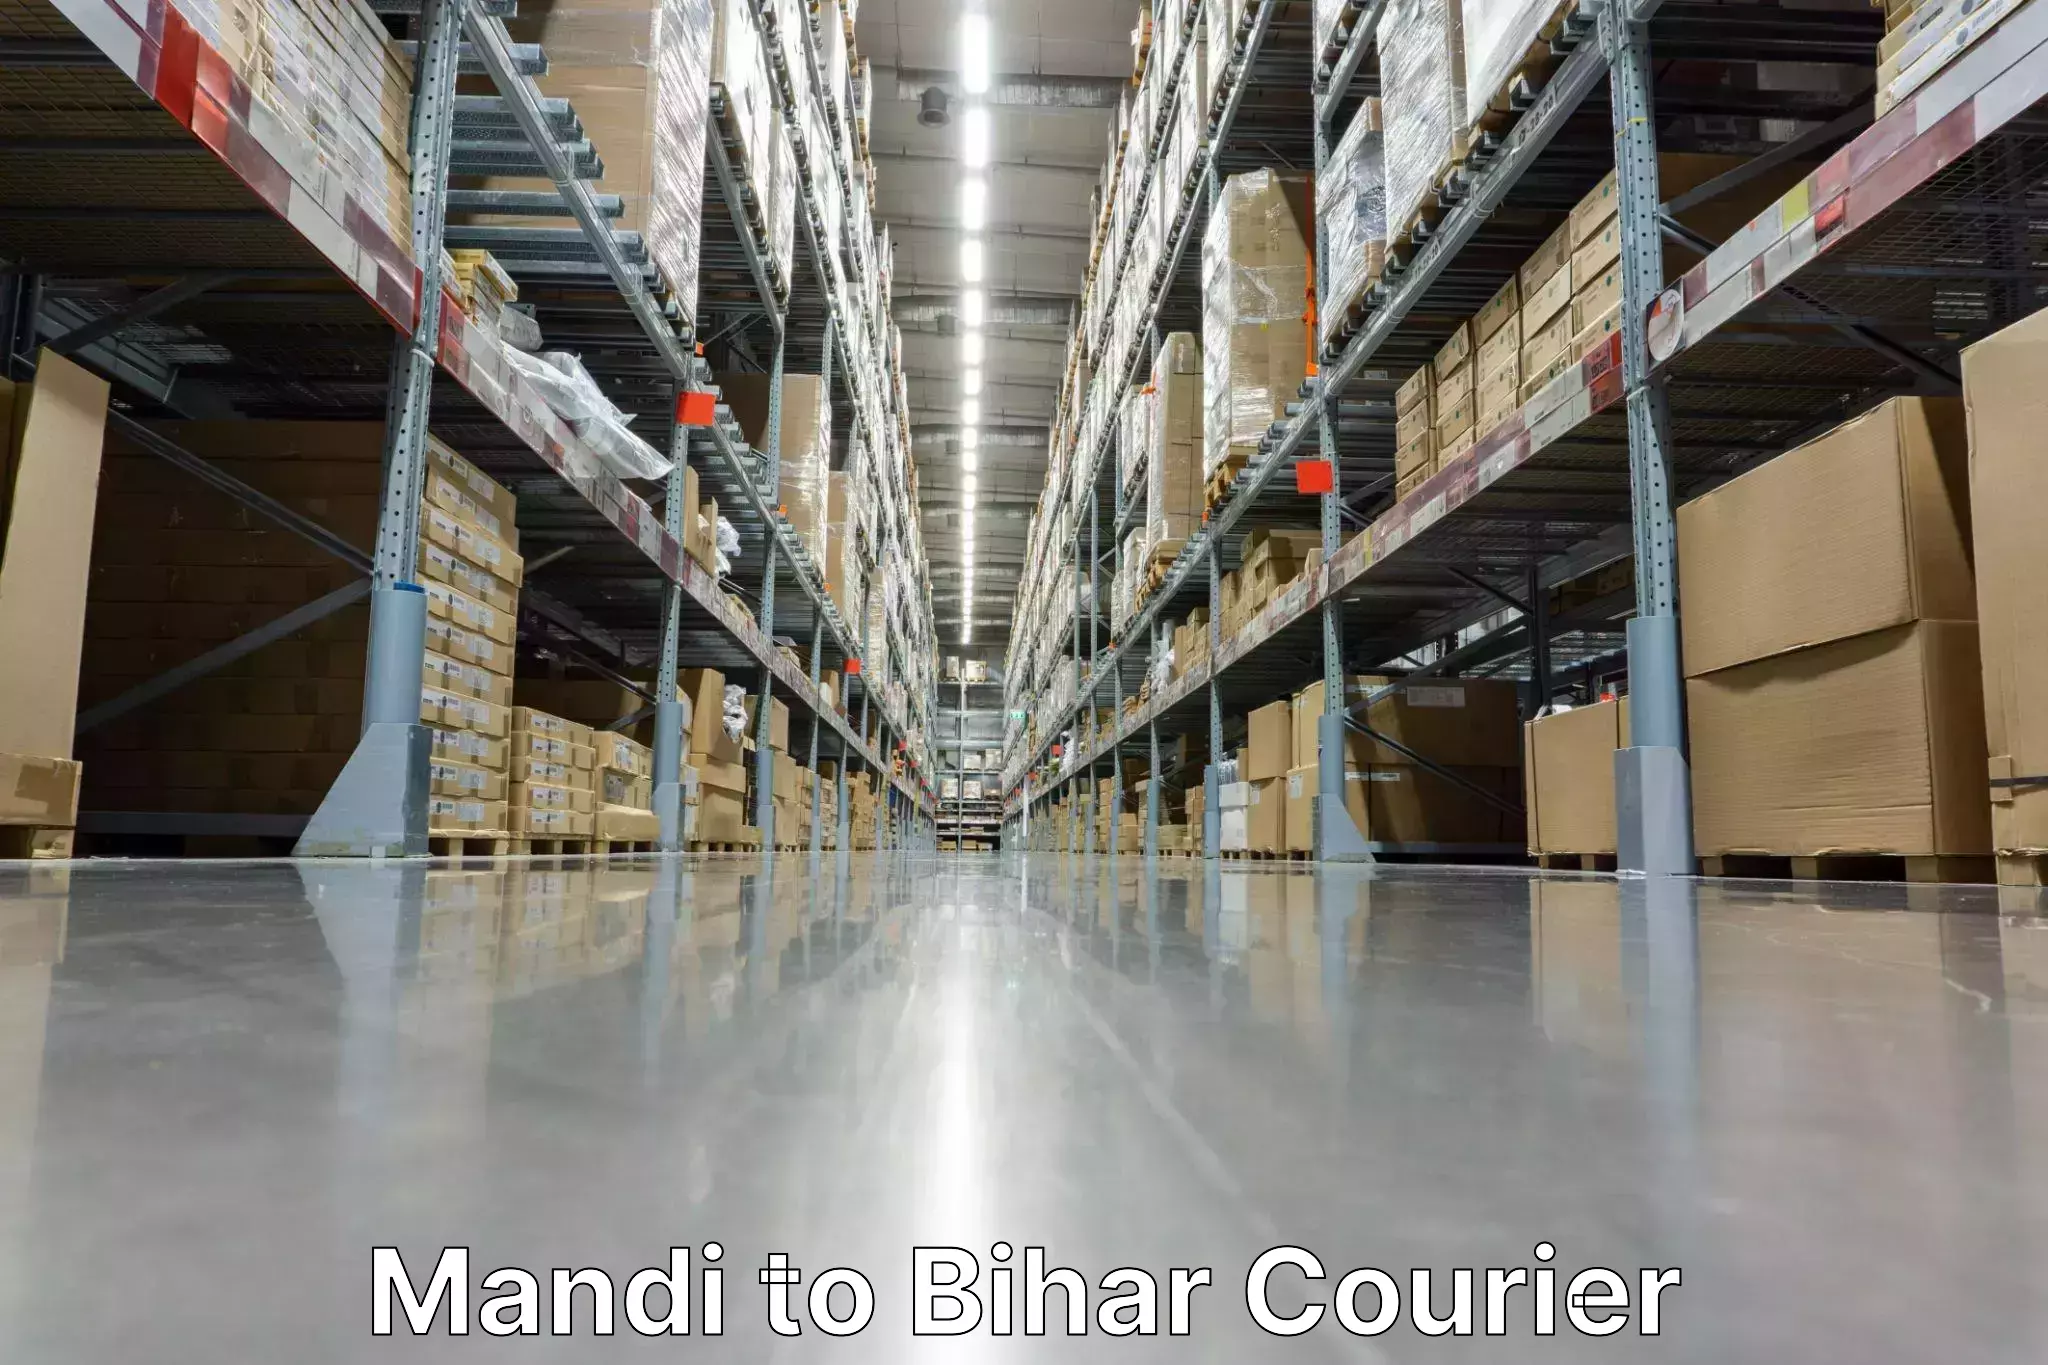 Courier service comparison Mandi to Naugachhia